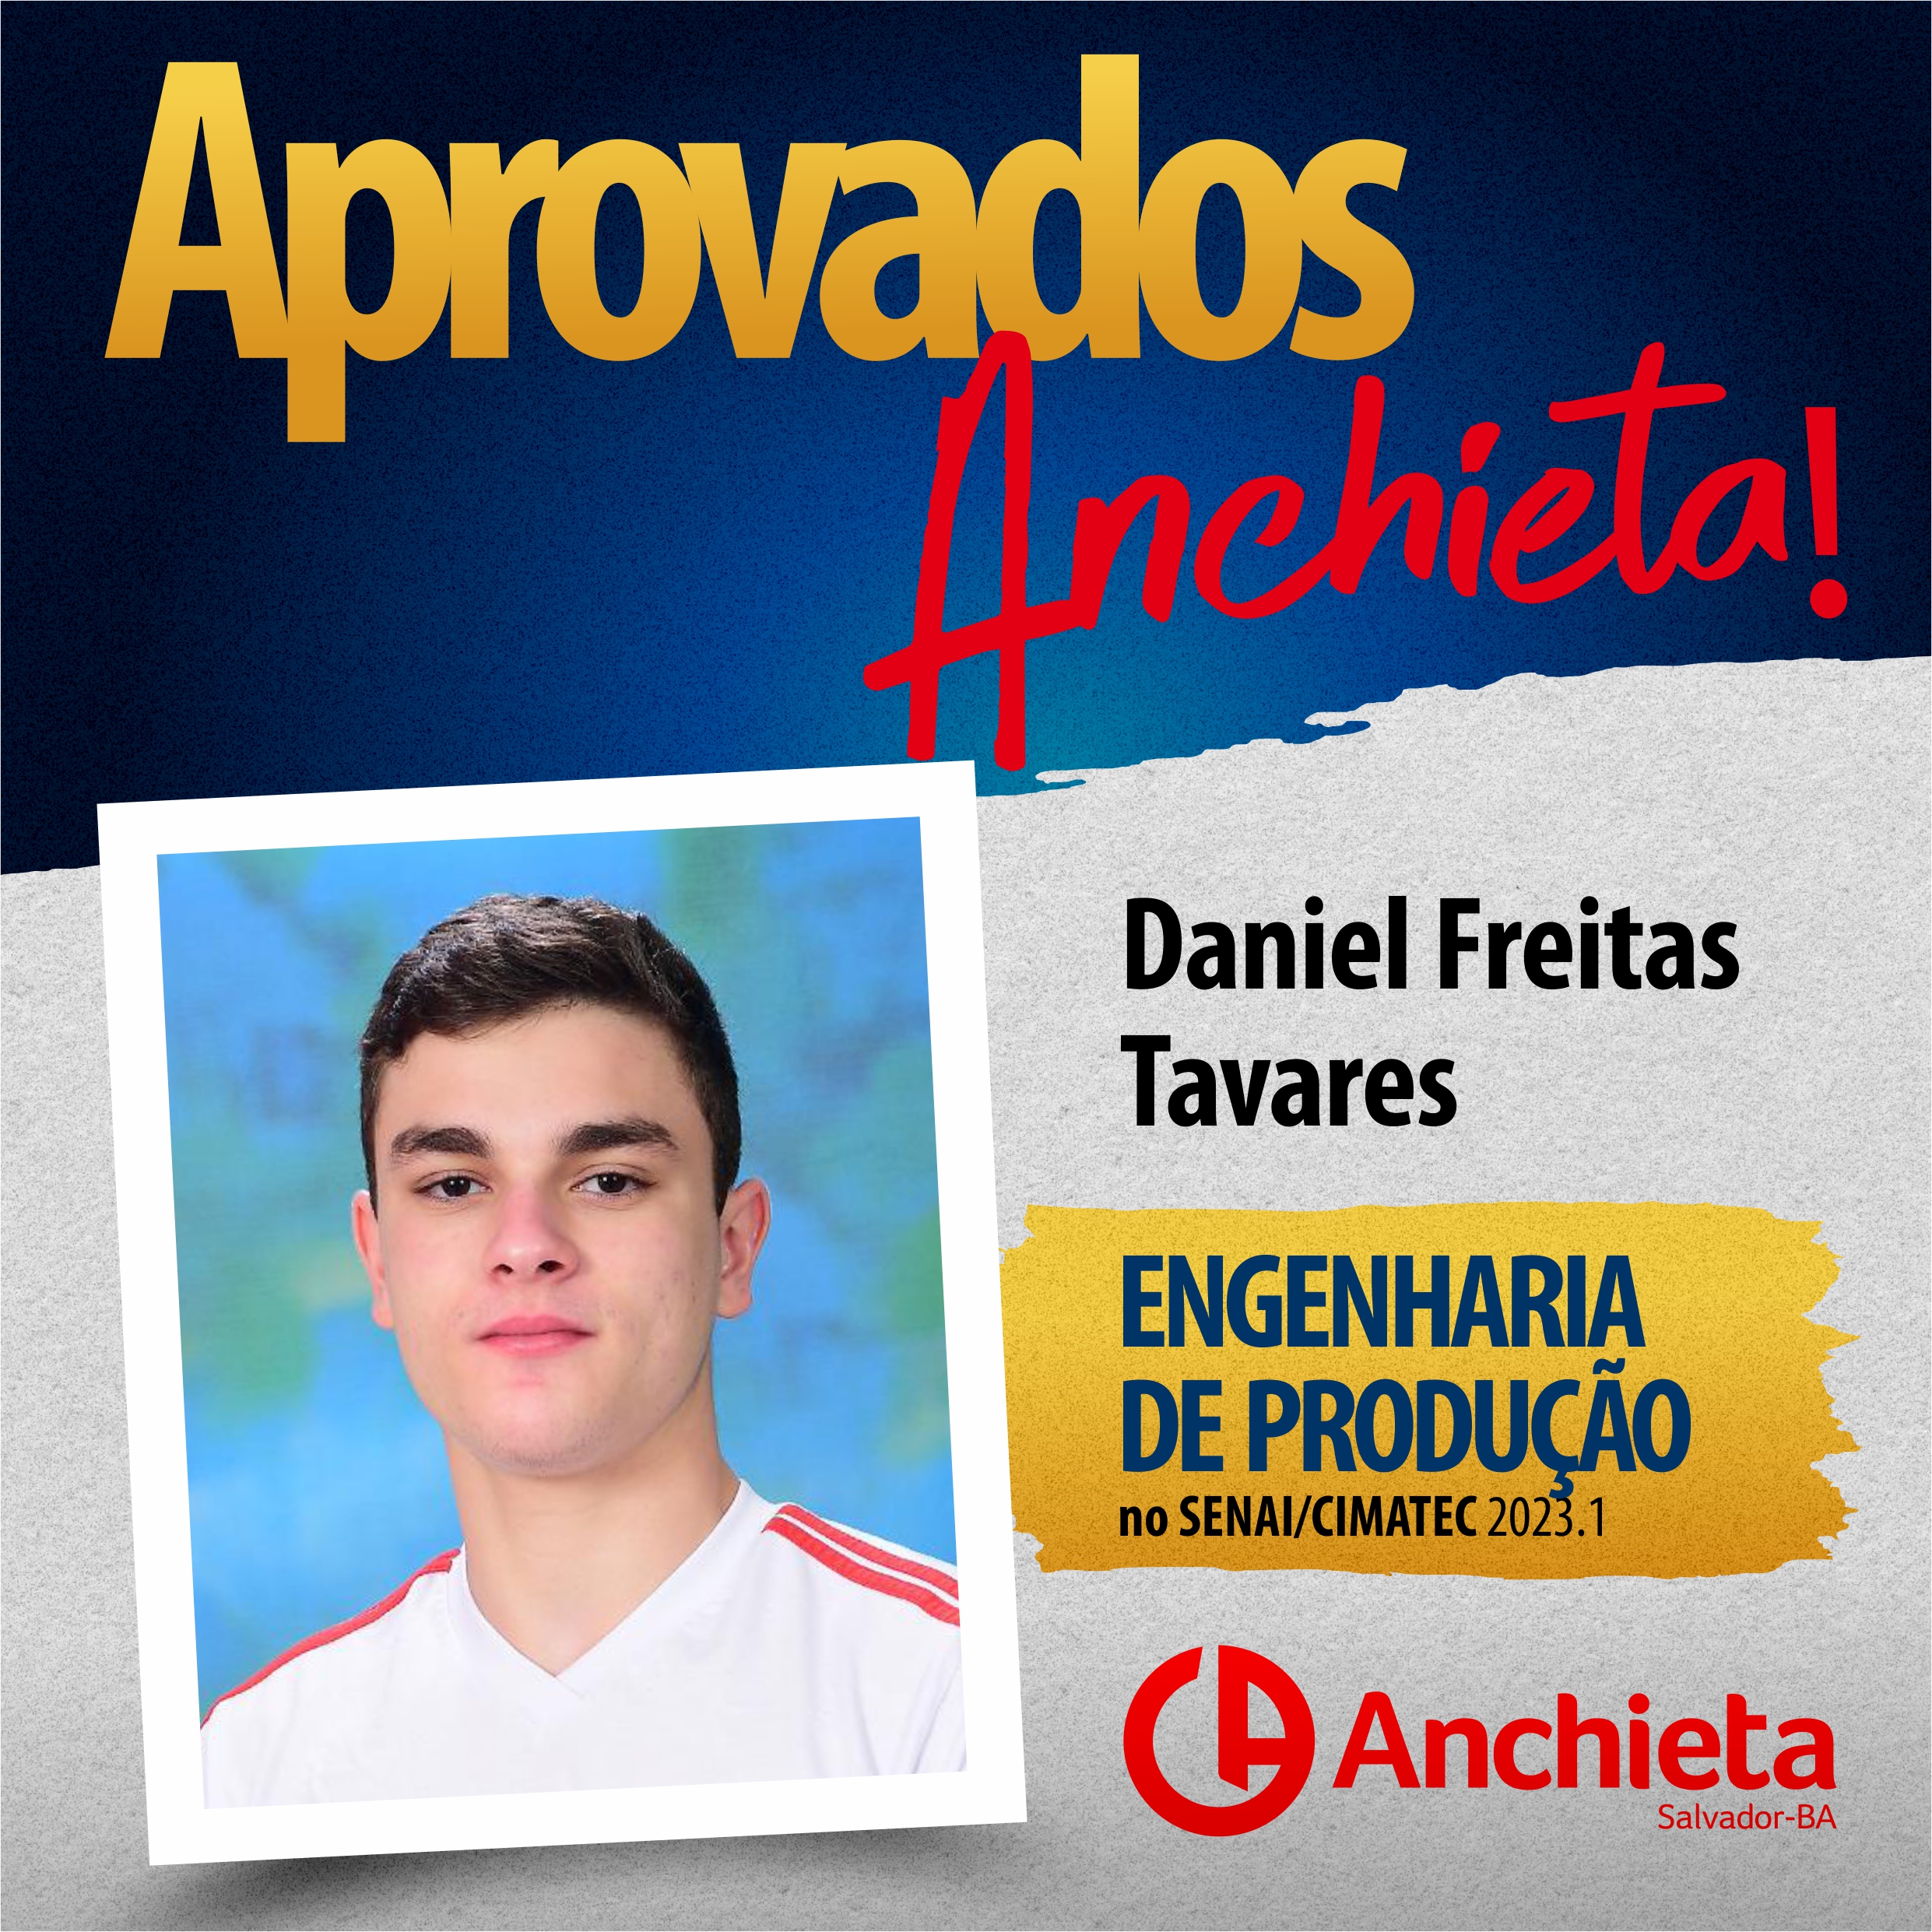 Daniel Freitas - Eng. Produção